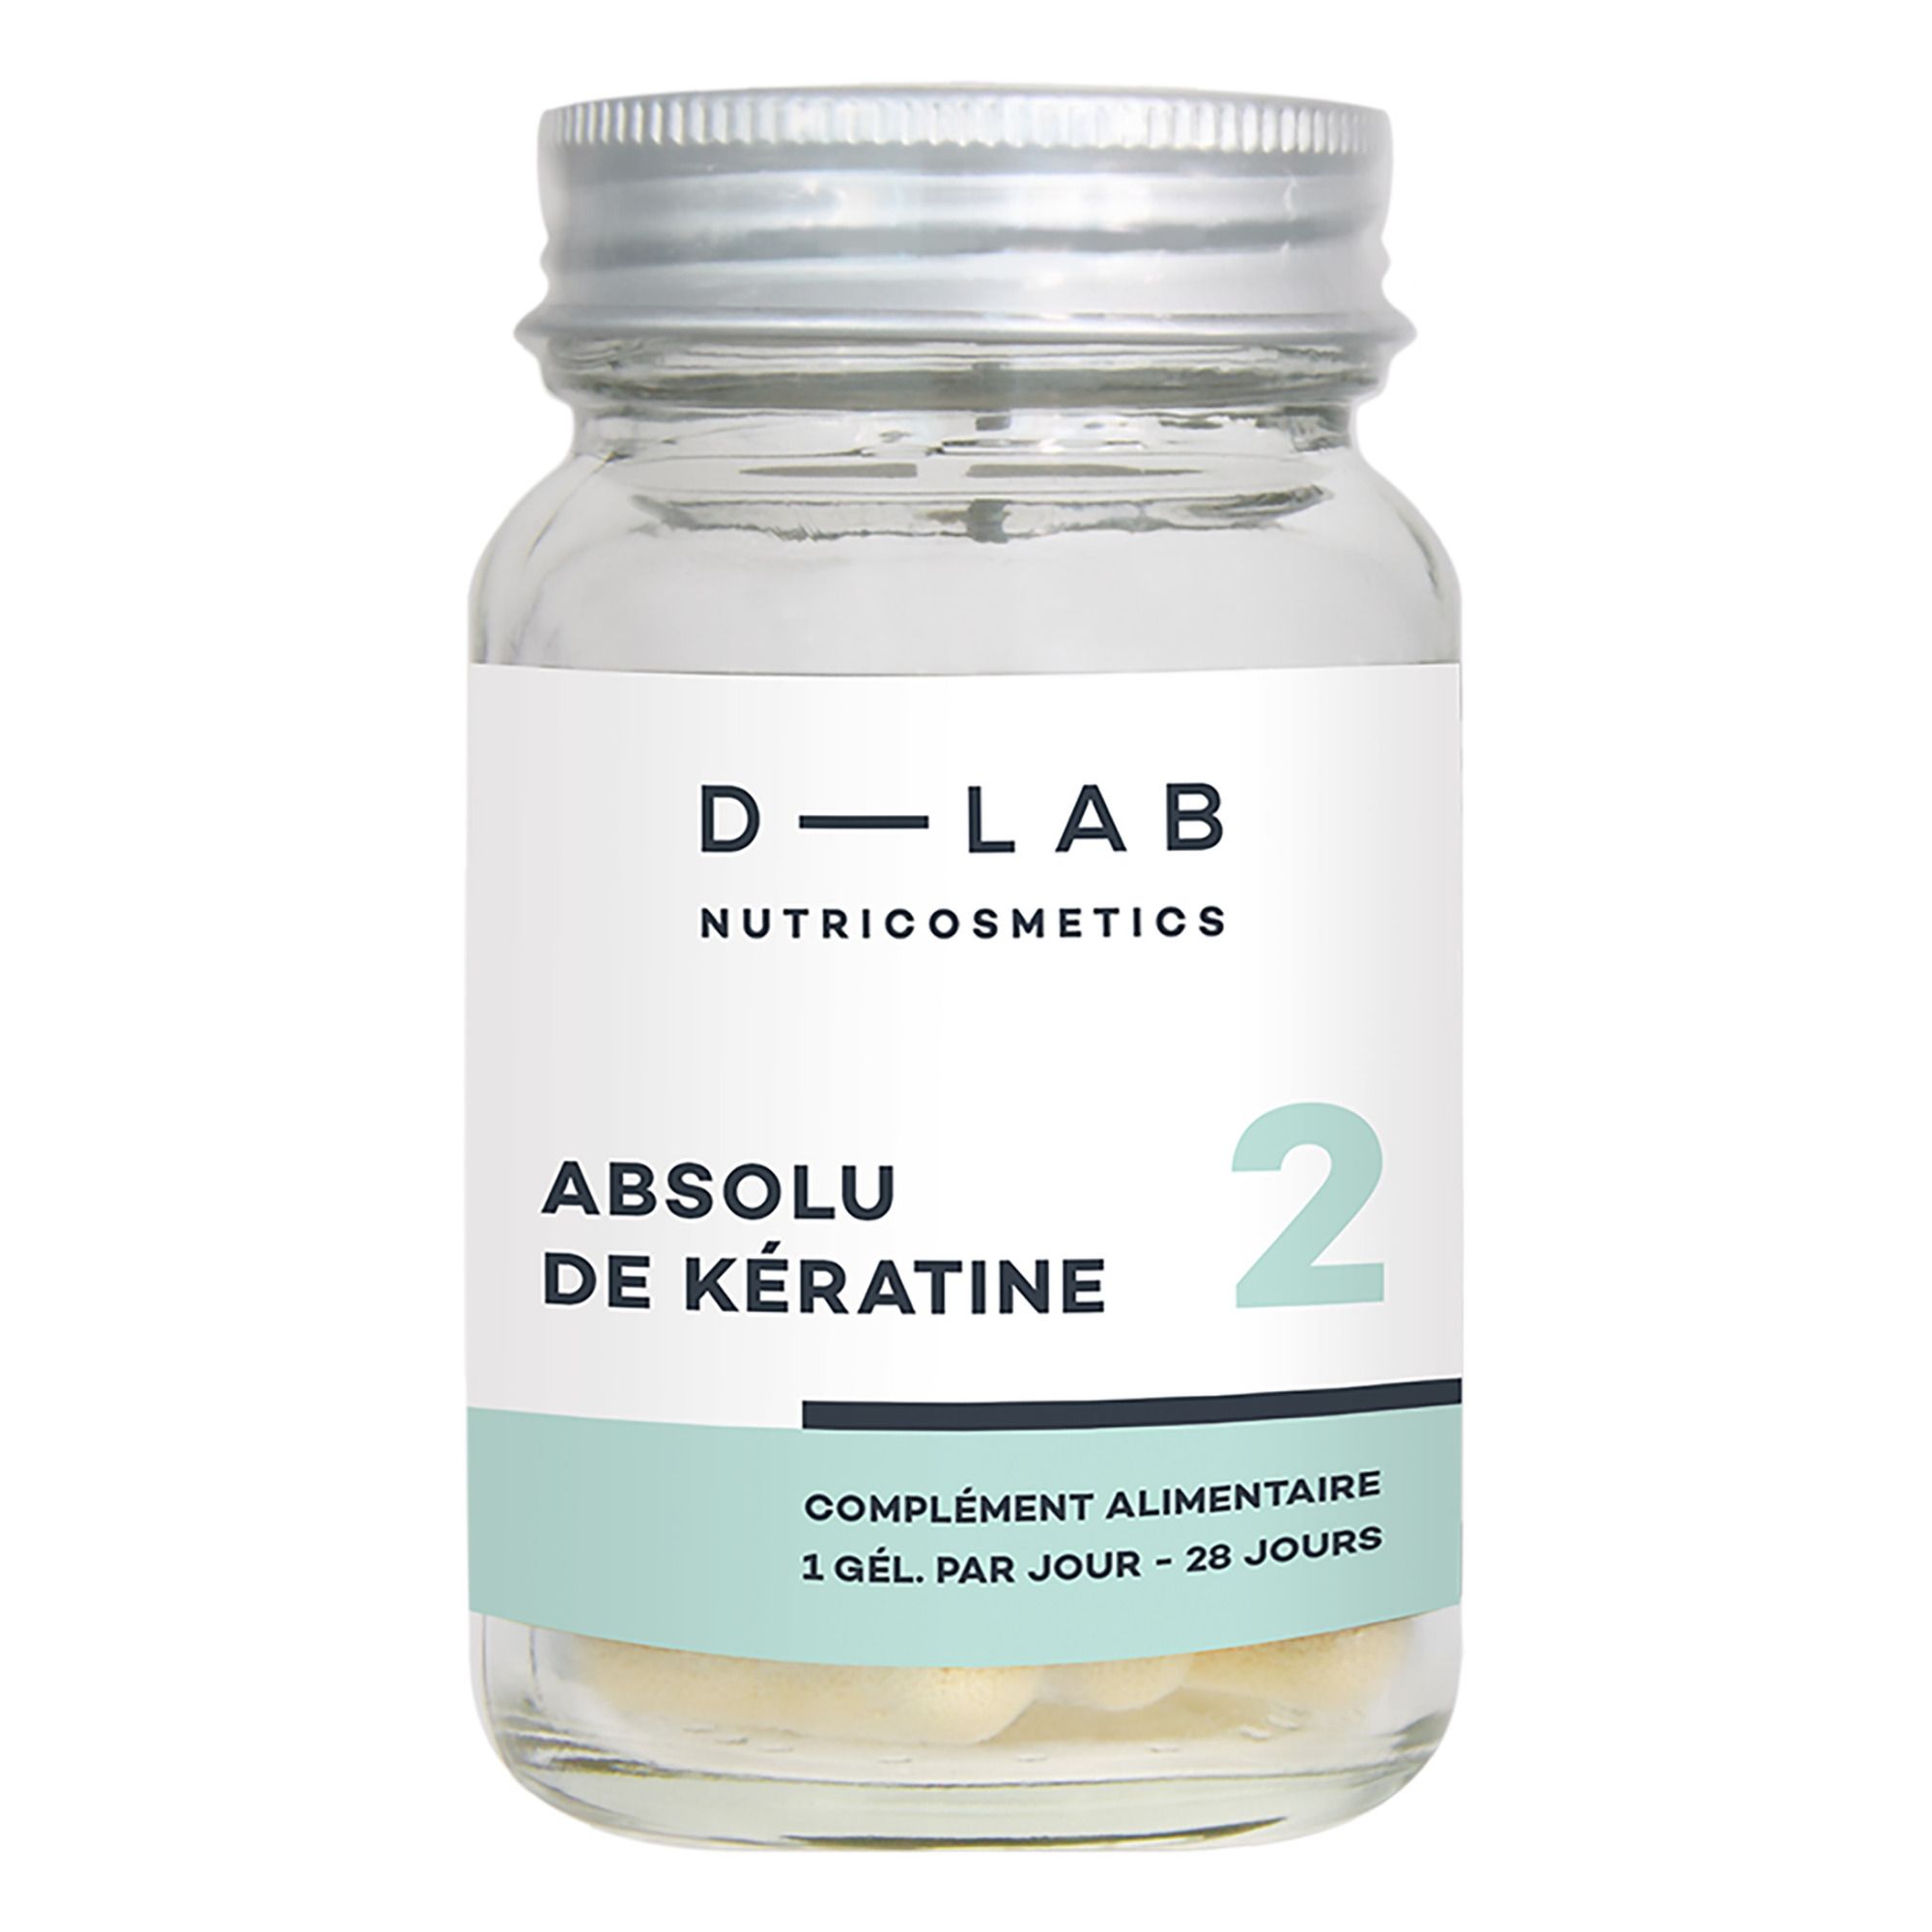 D-LAB NUTRICOSMETICS - Absolu de Kératine  Complément alimentaire - 1 mois